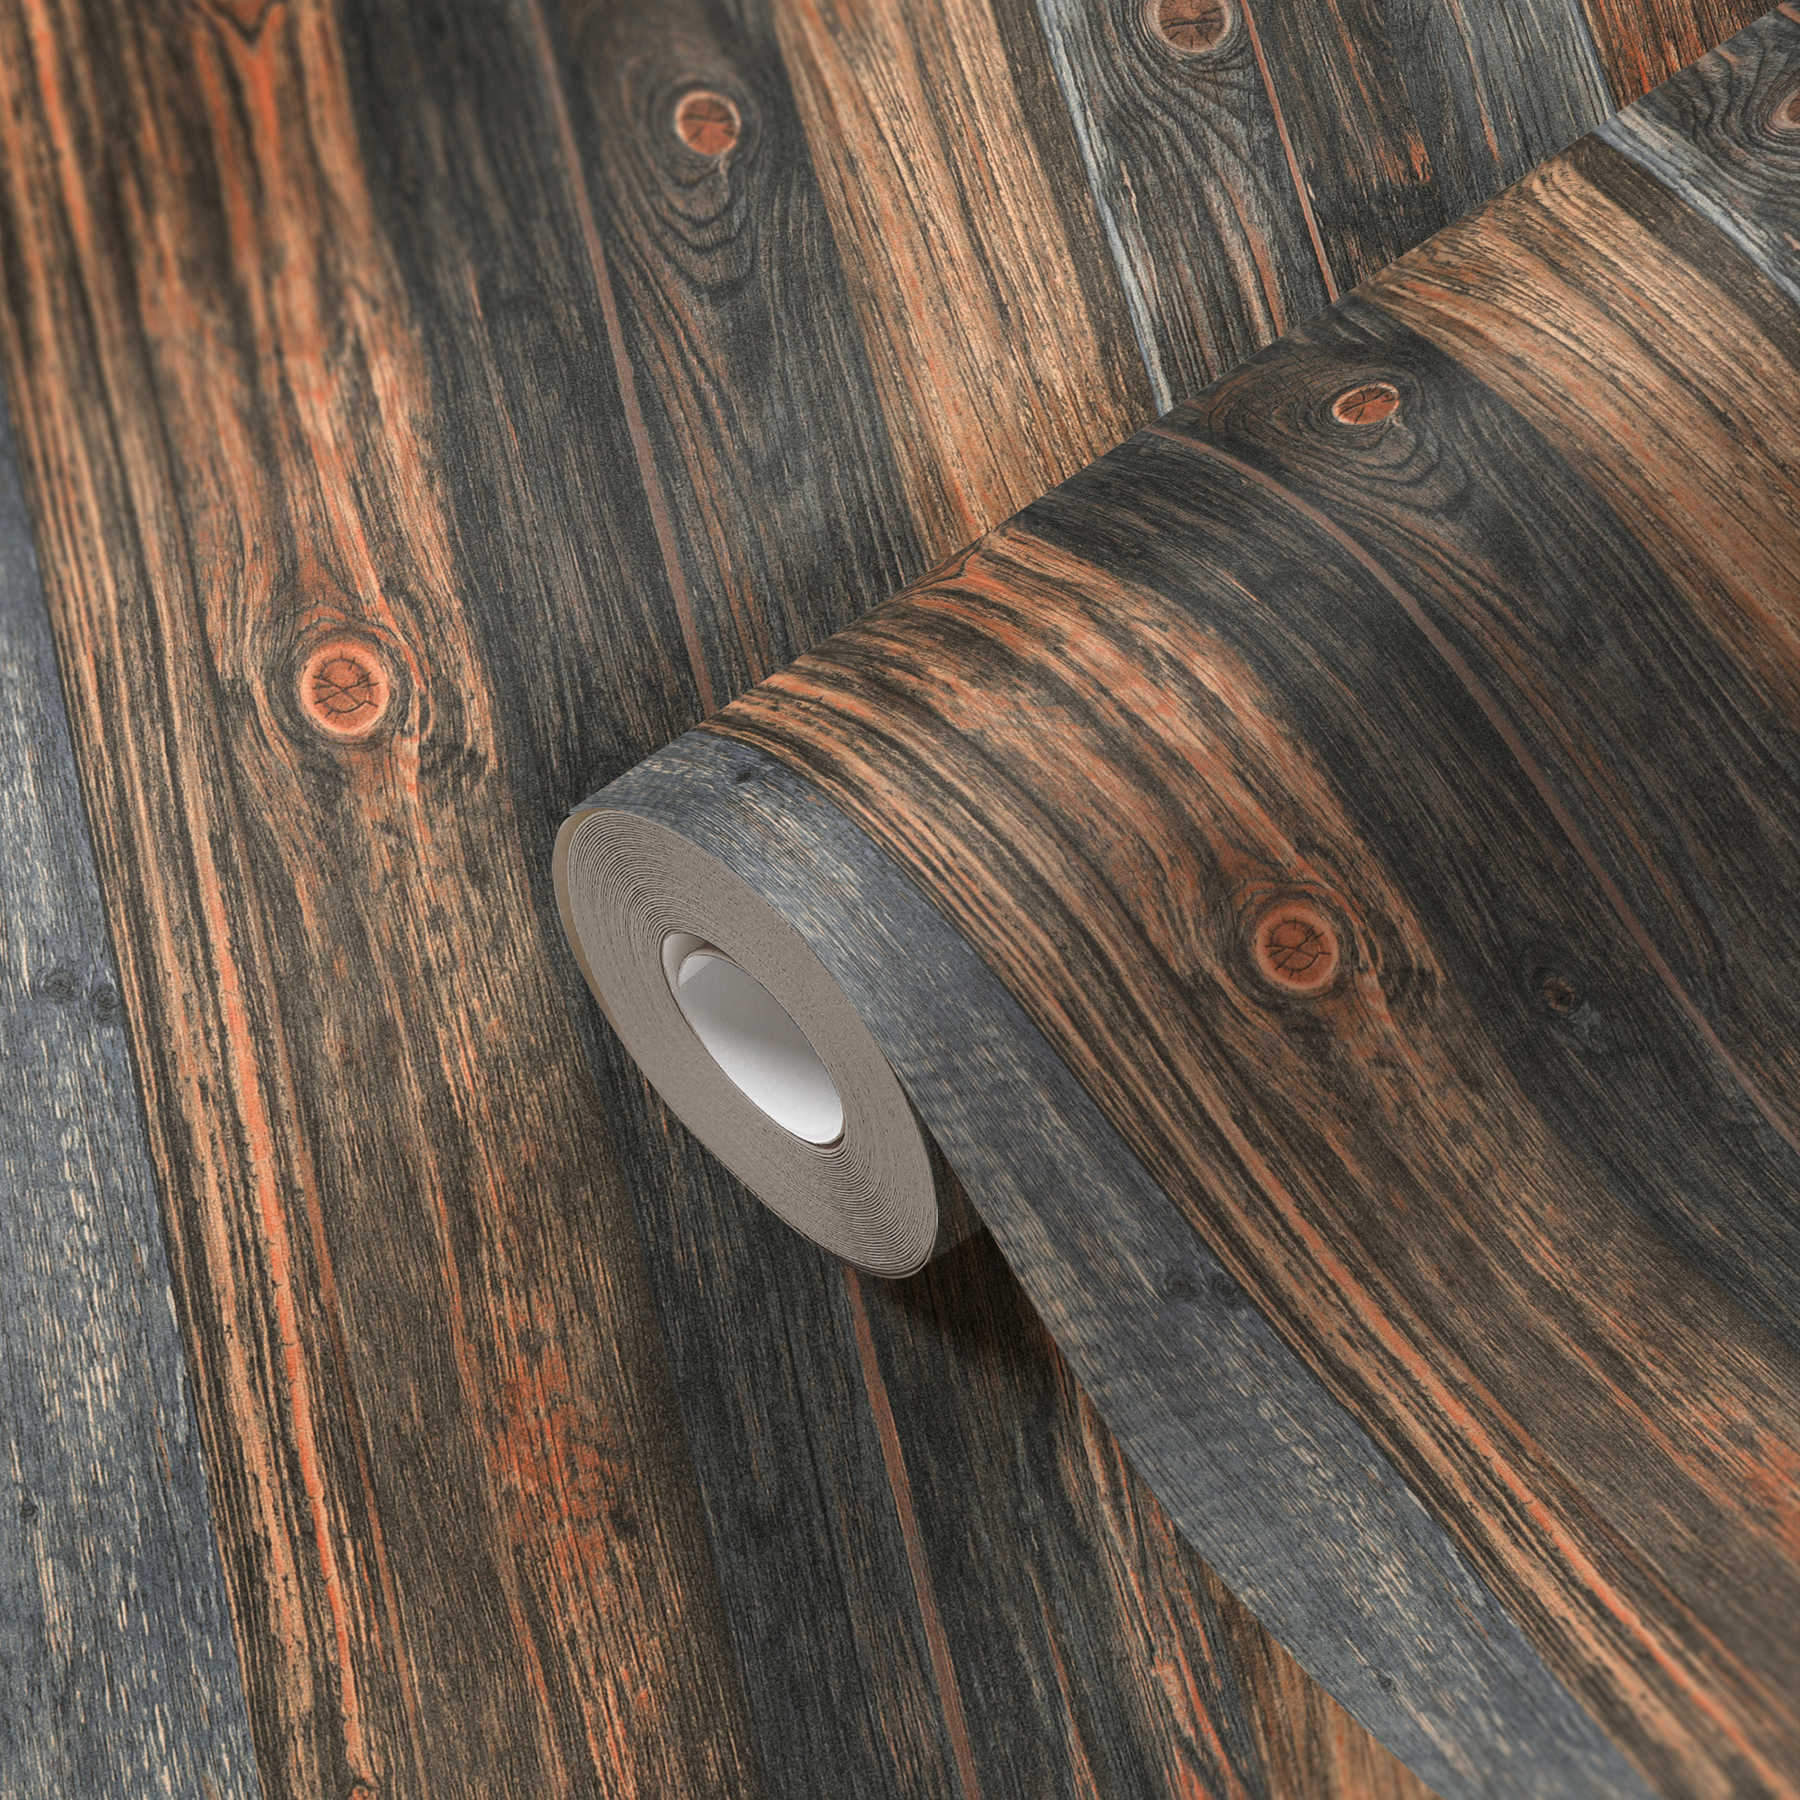             Wooden wallpaper with boards motif, wood texture & grain - brown, grey, beige
        